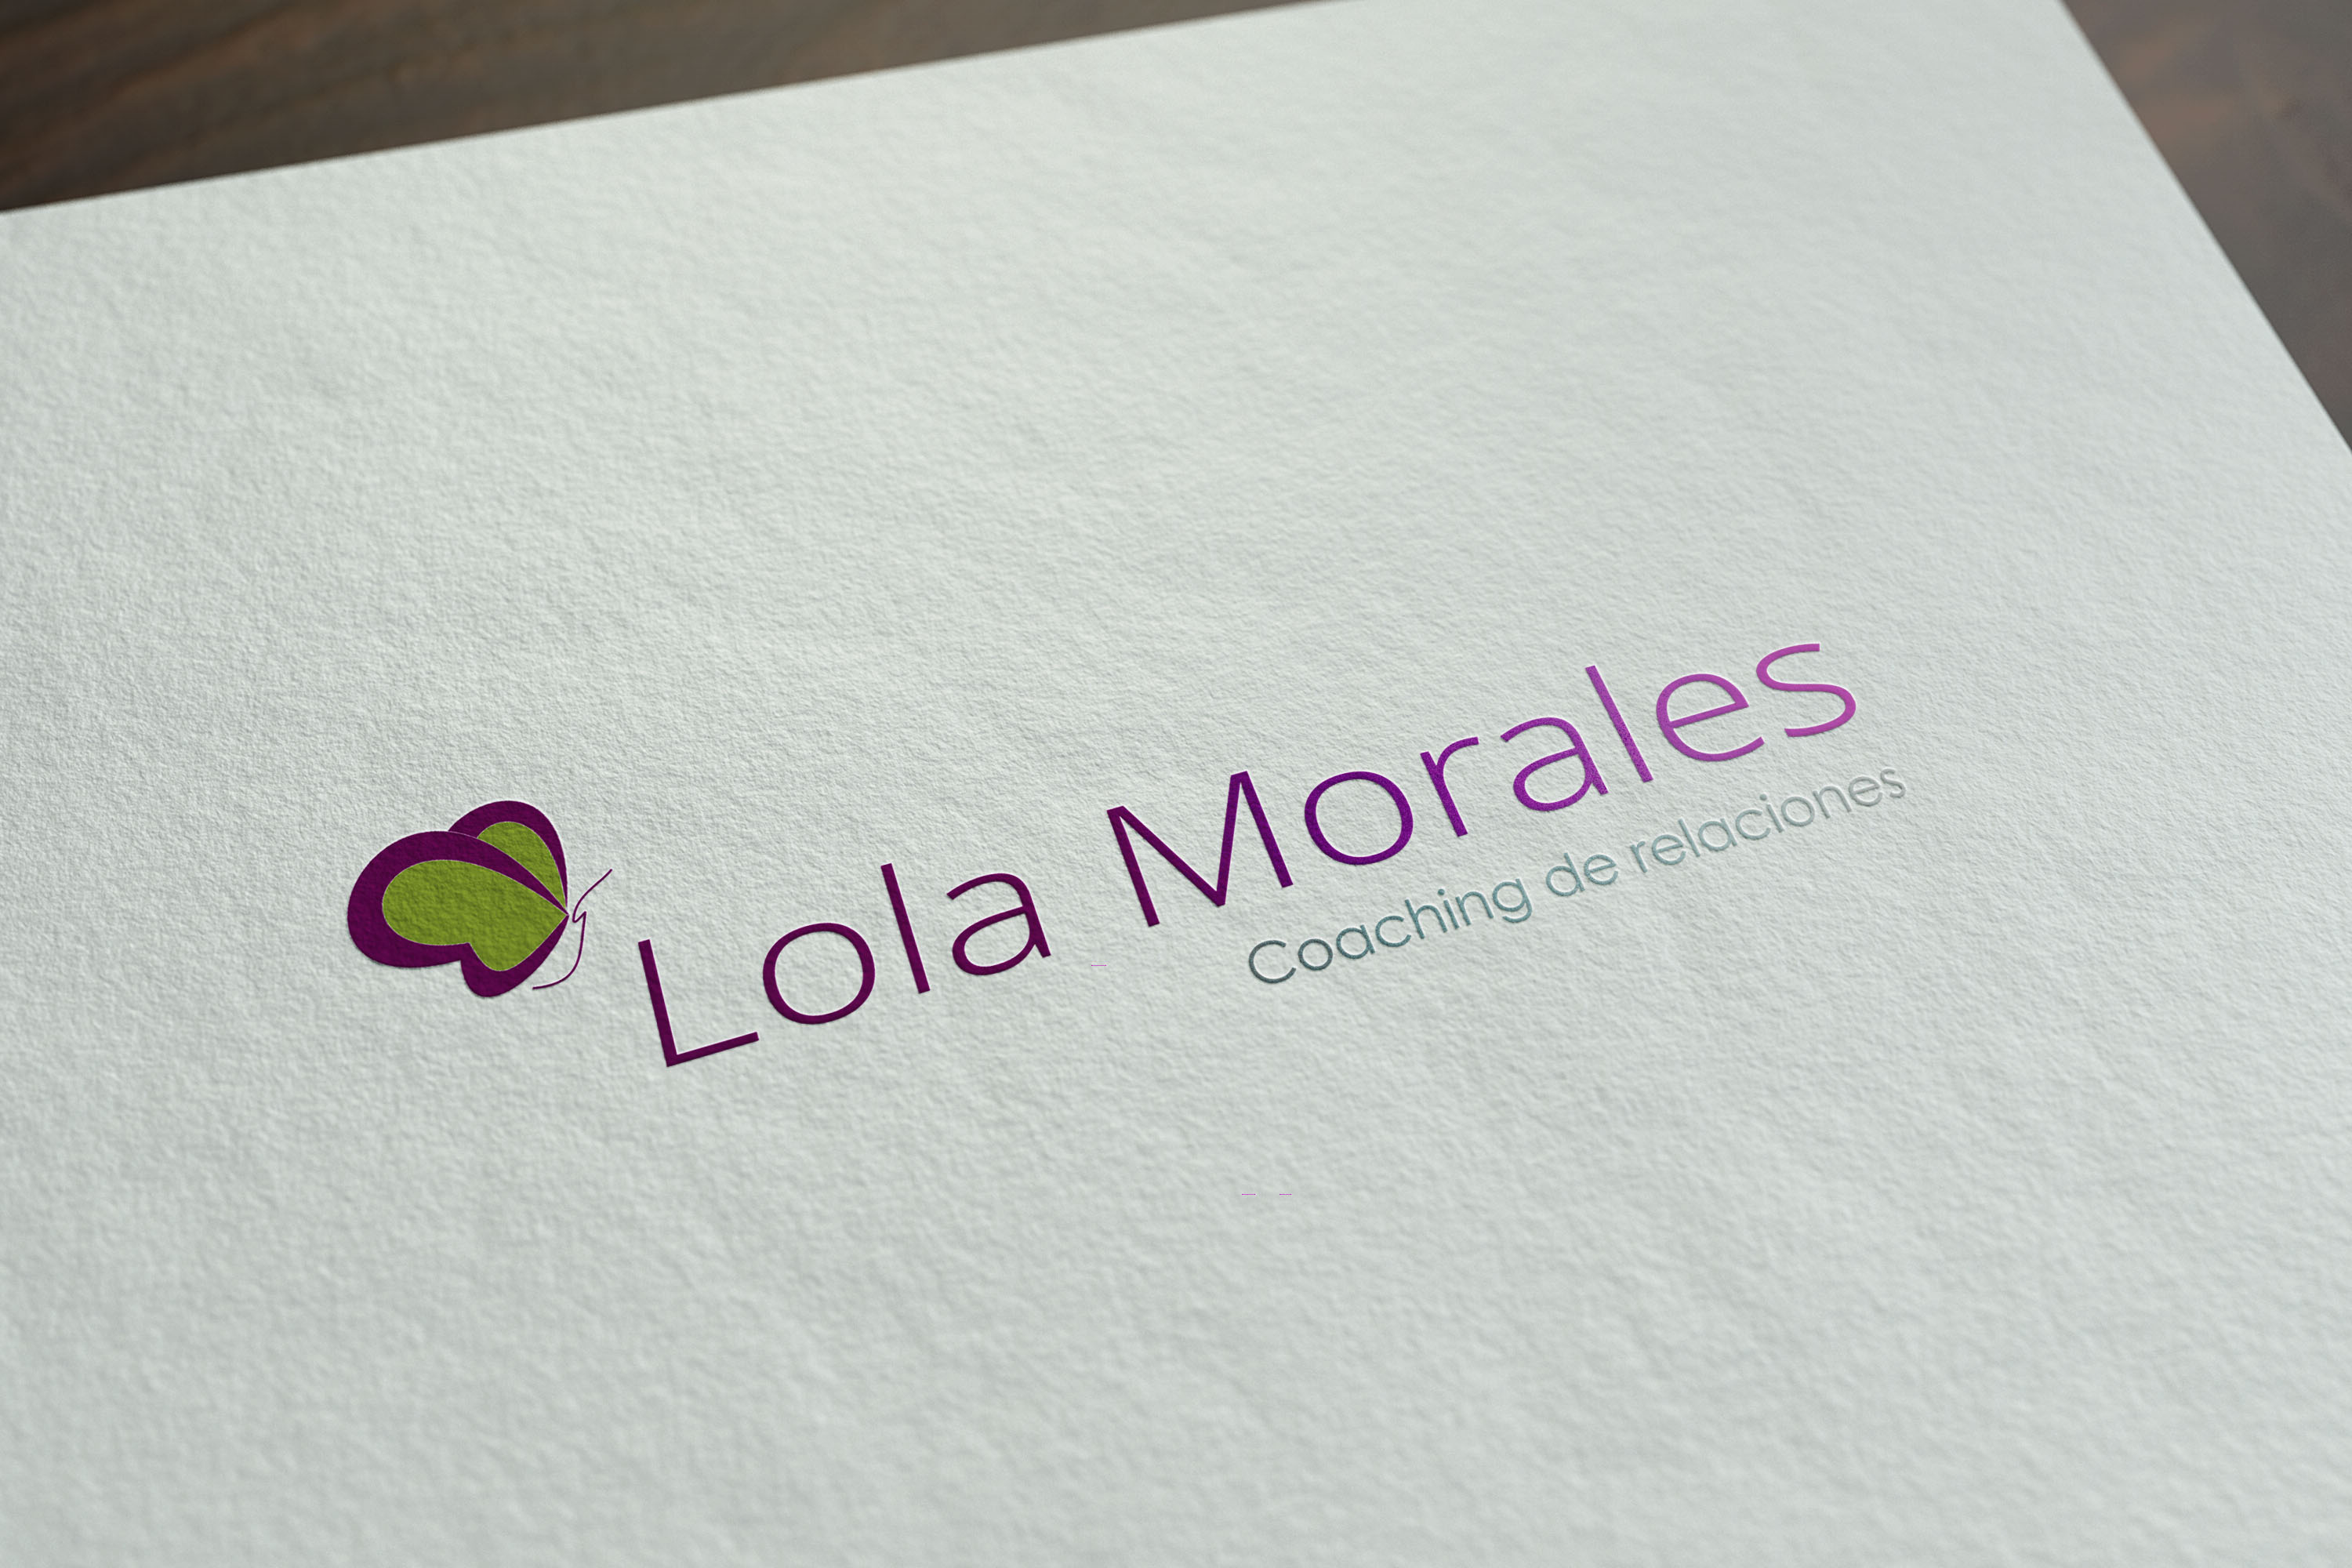 Lola Morales